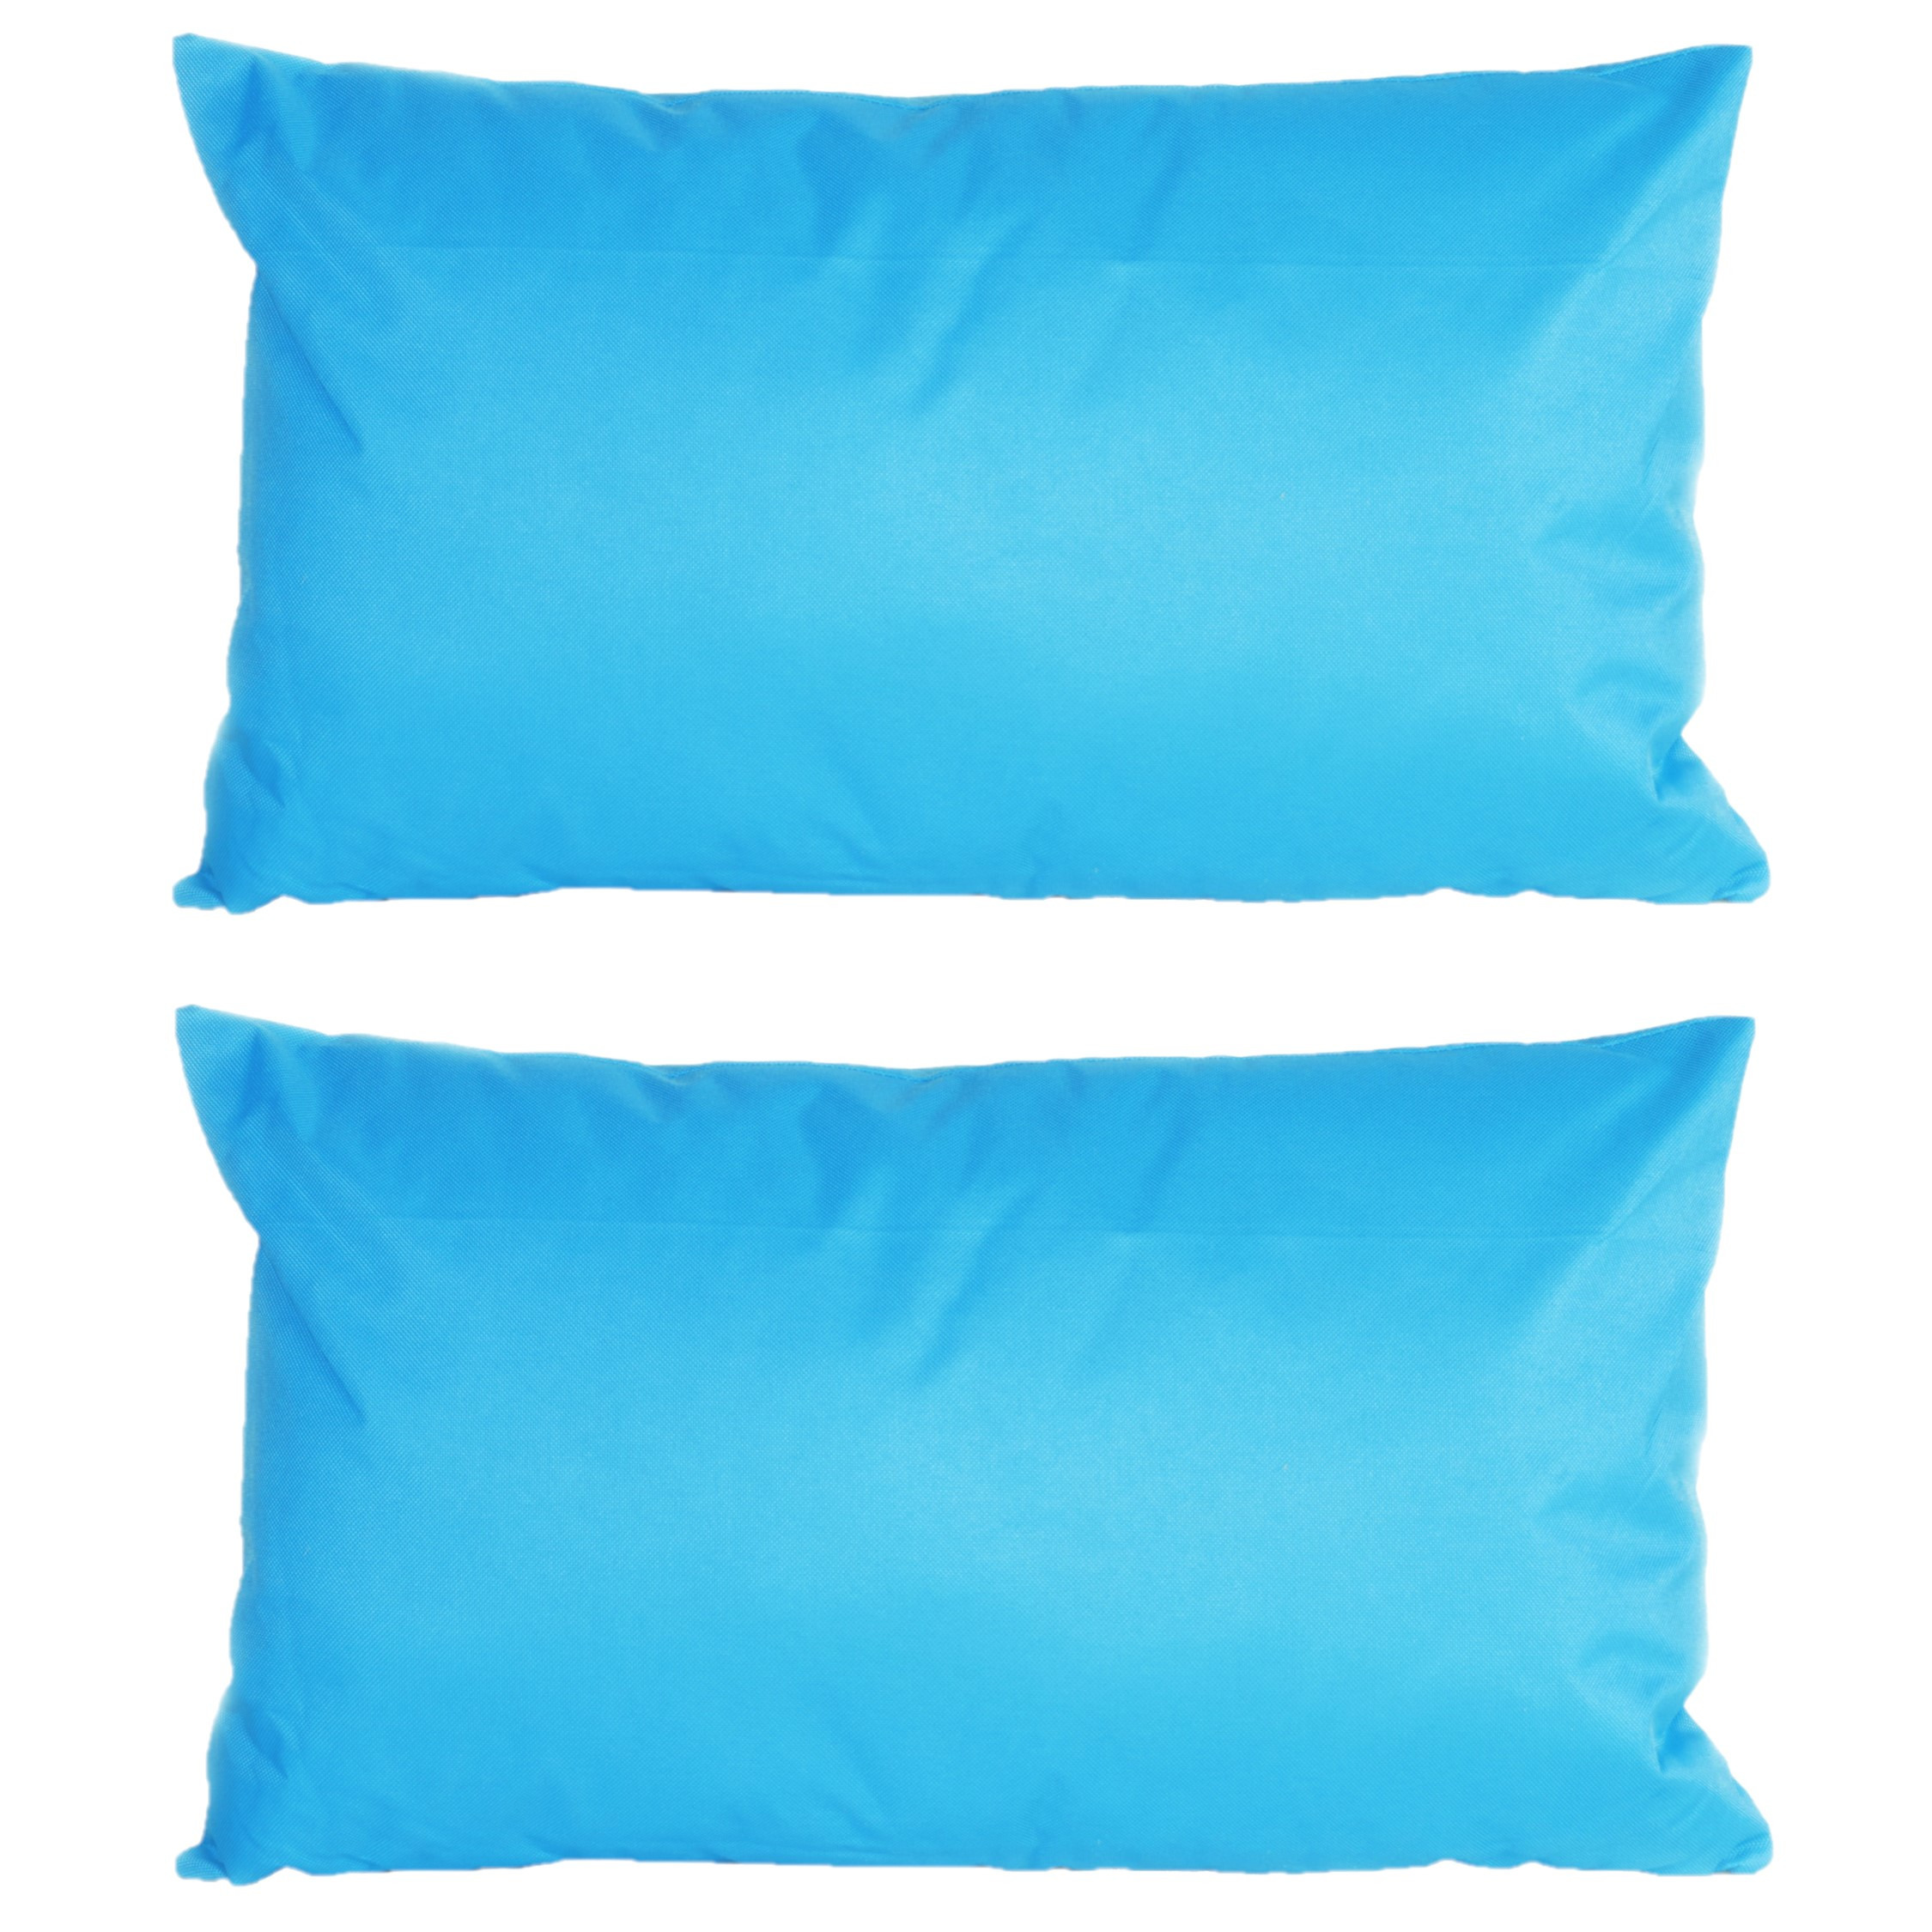 4x stuks bank-sier kussens voor binnen en buiten in de kleur lichtblauw 30 x 50 cm Tuinkussens voor